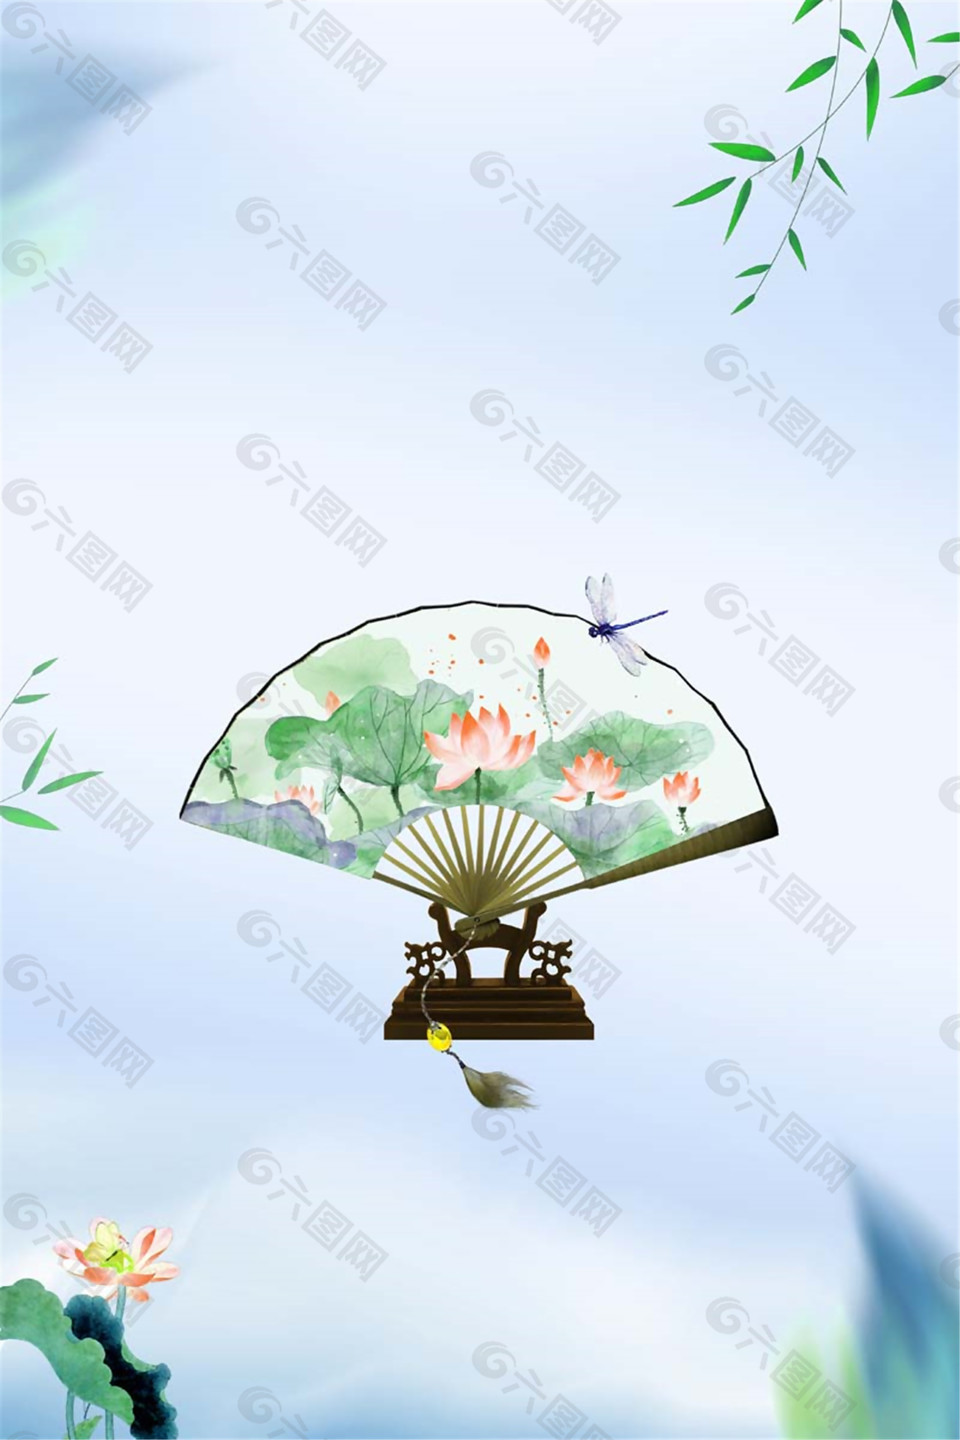 中国风传统扇形荷花夏至海报背景设计